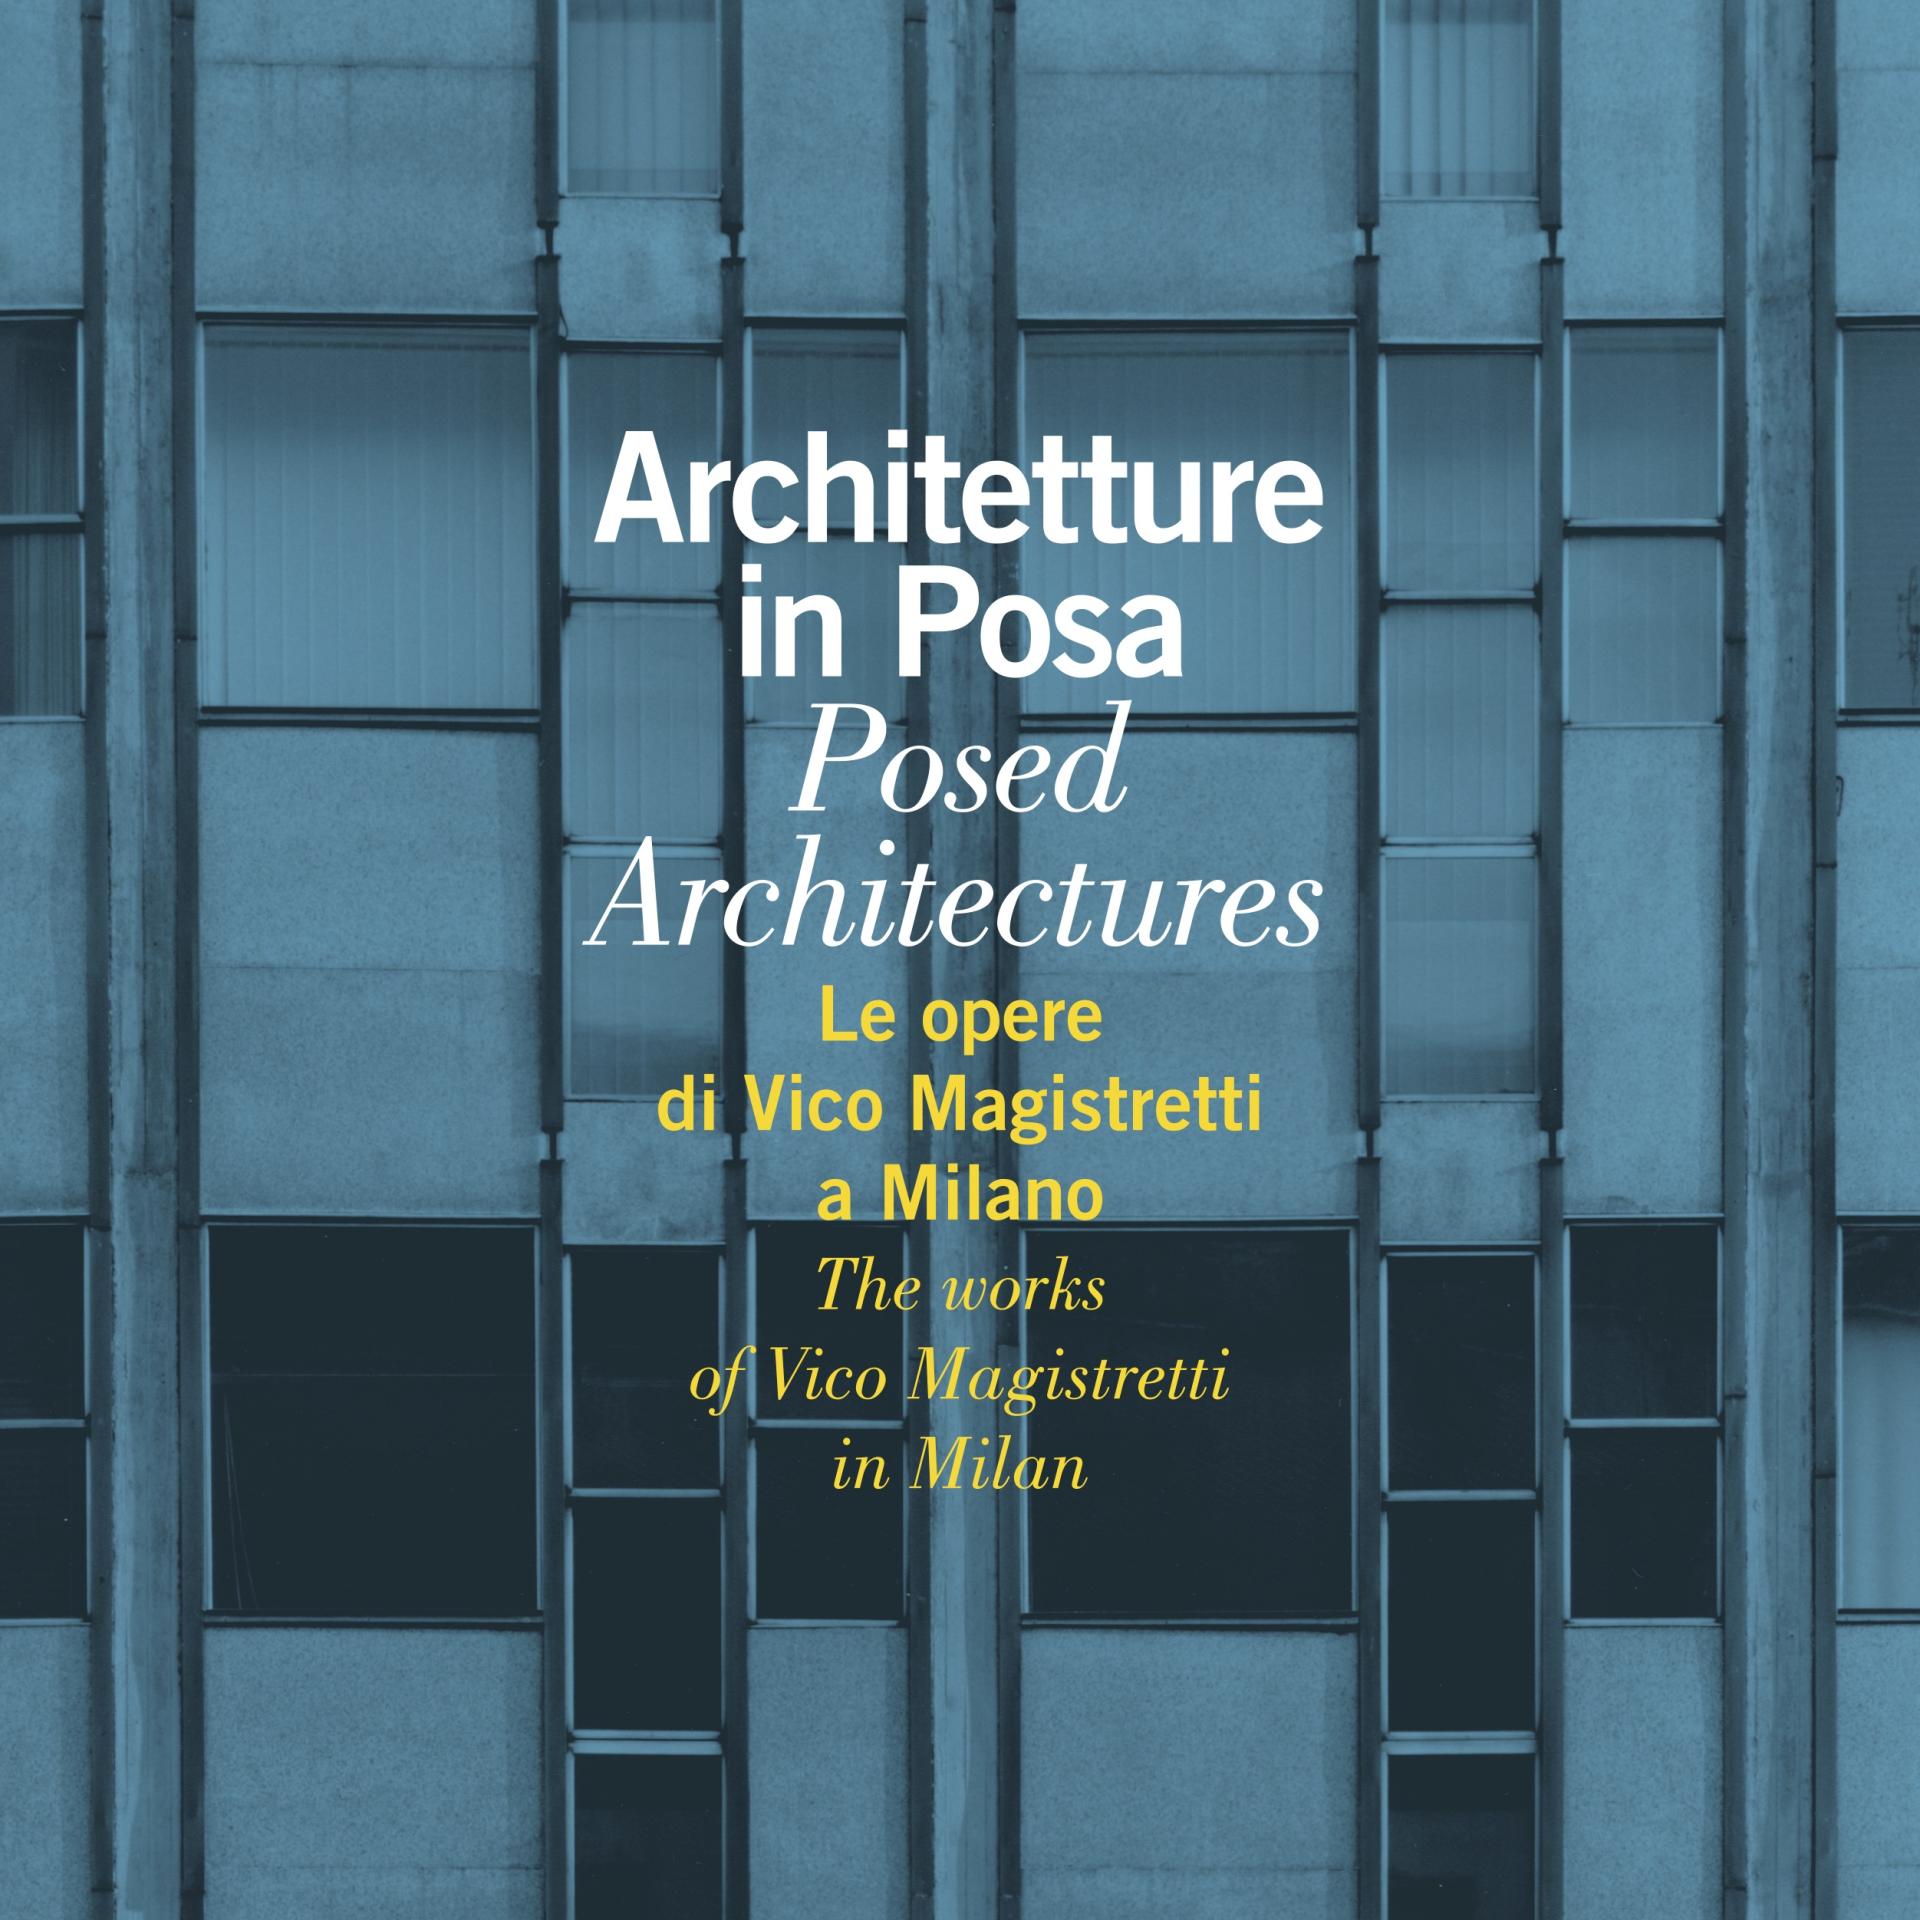 Architetture in posa